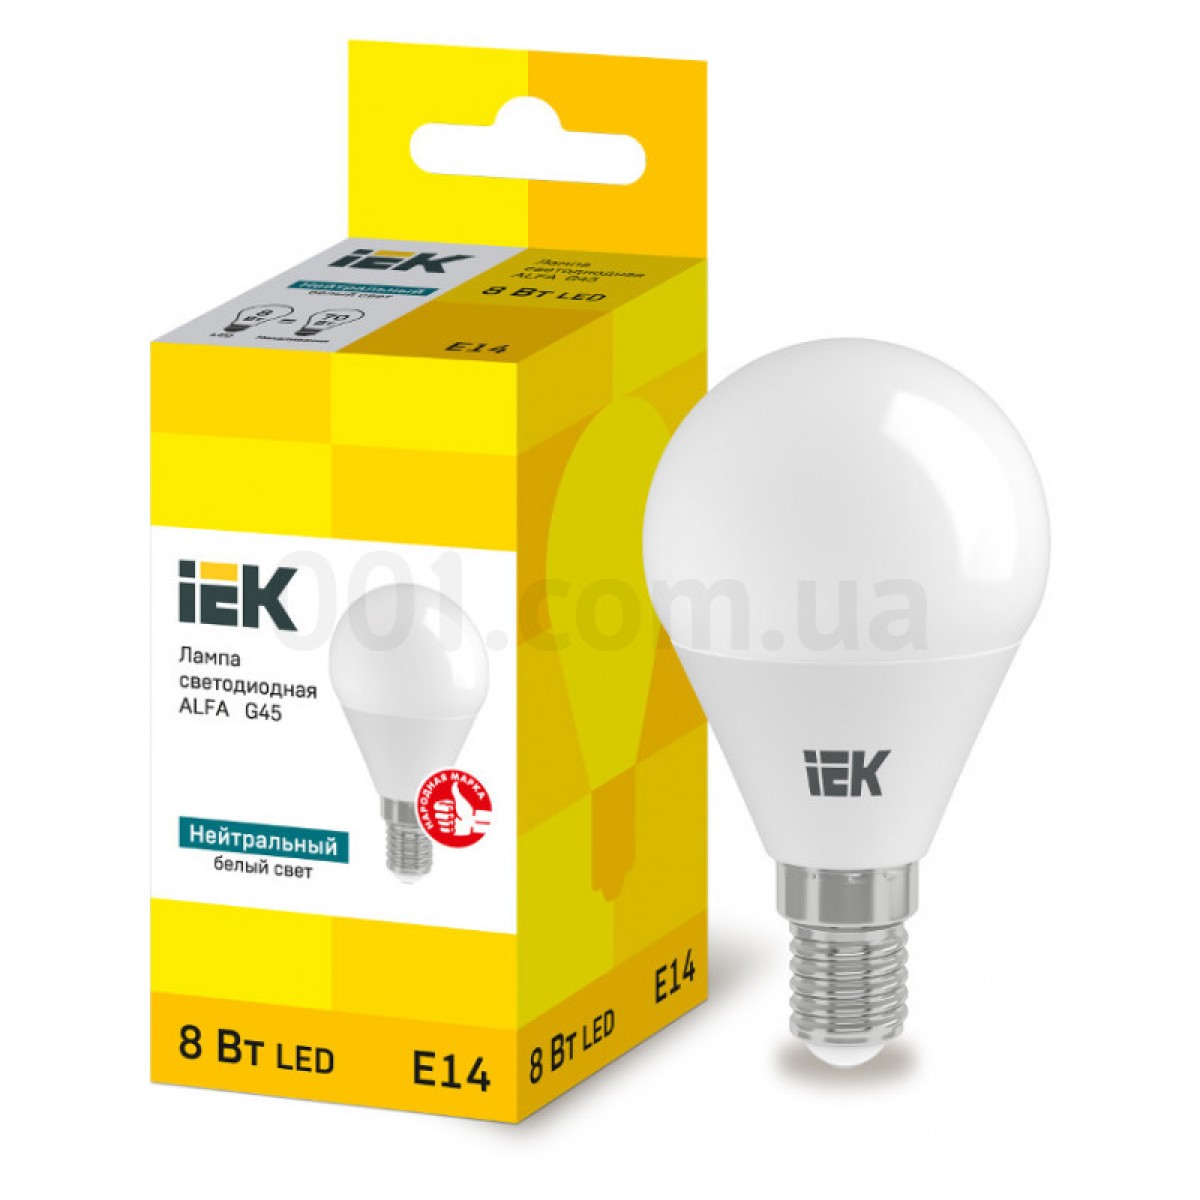 Світлодіодна лампа LED ALFA G45 (куля) 8 Вт 230В 4000К E14, IEK 256_256.jpg